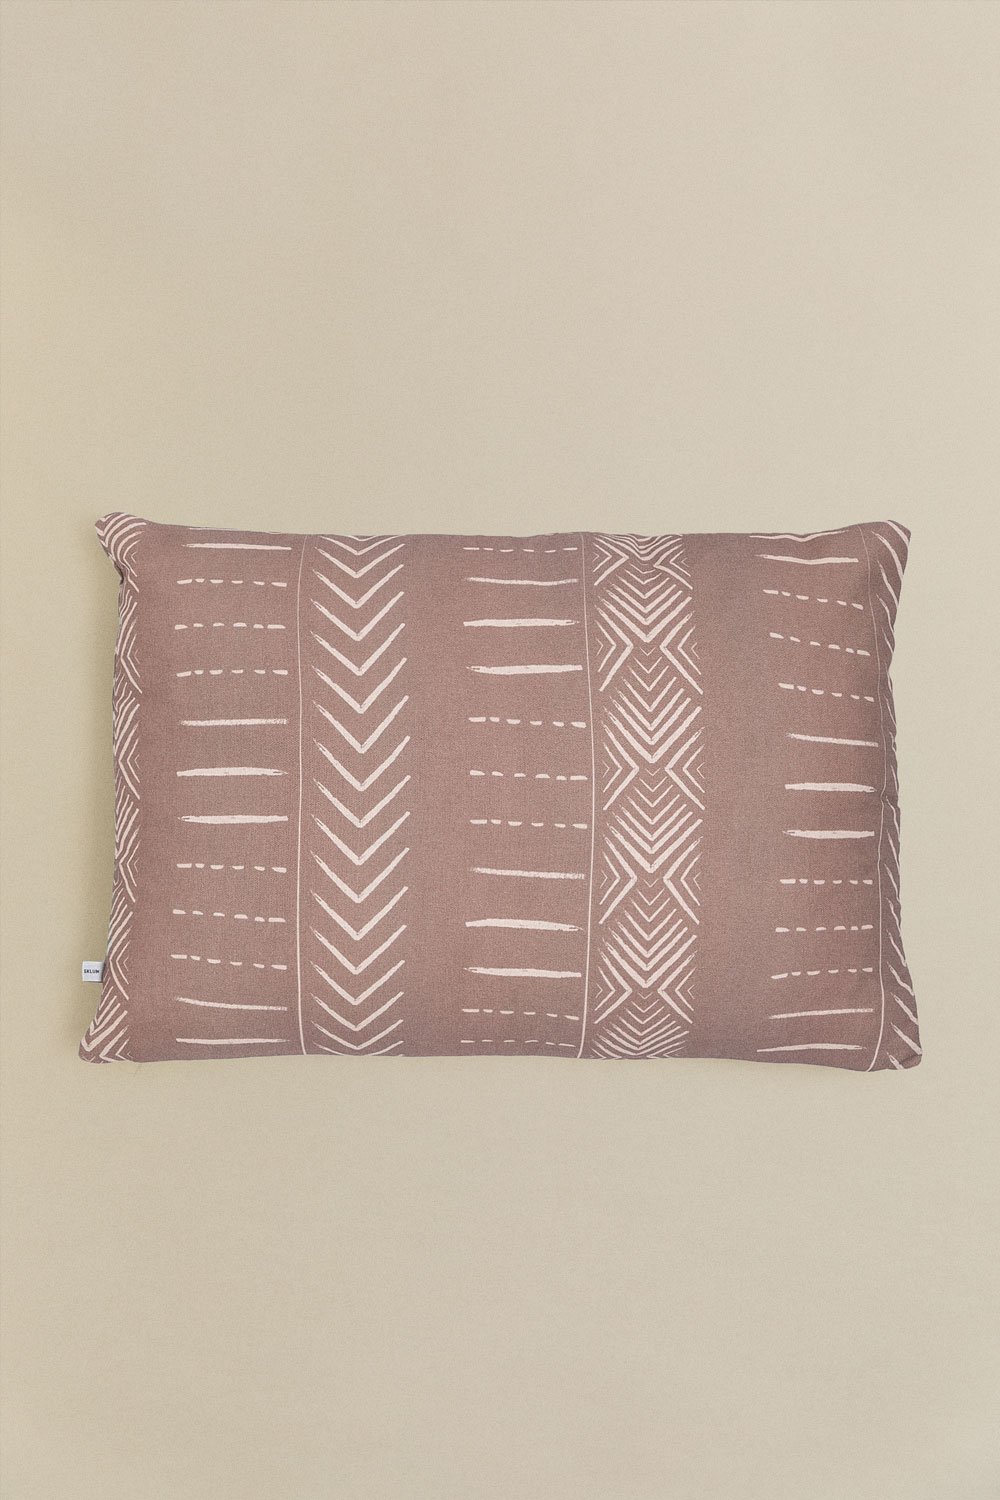 Federa per cuscino rettangolare in cotone (40x60 cm) Vorax Style, immagine della galleria 1